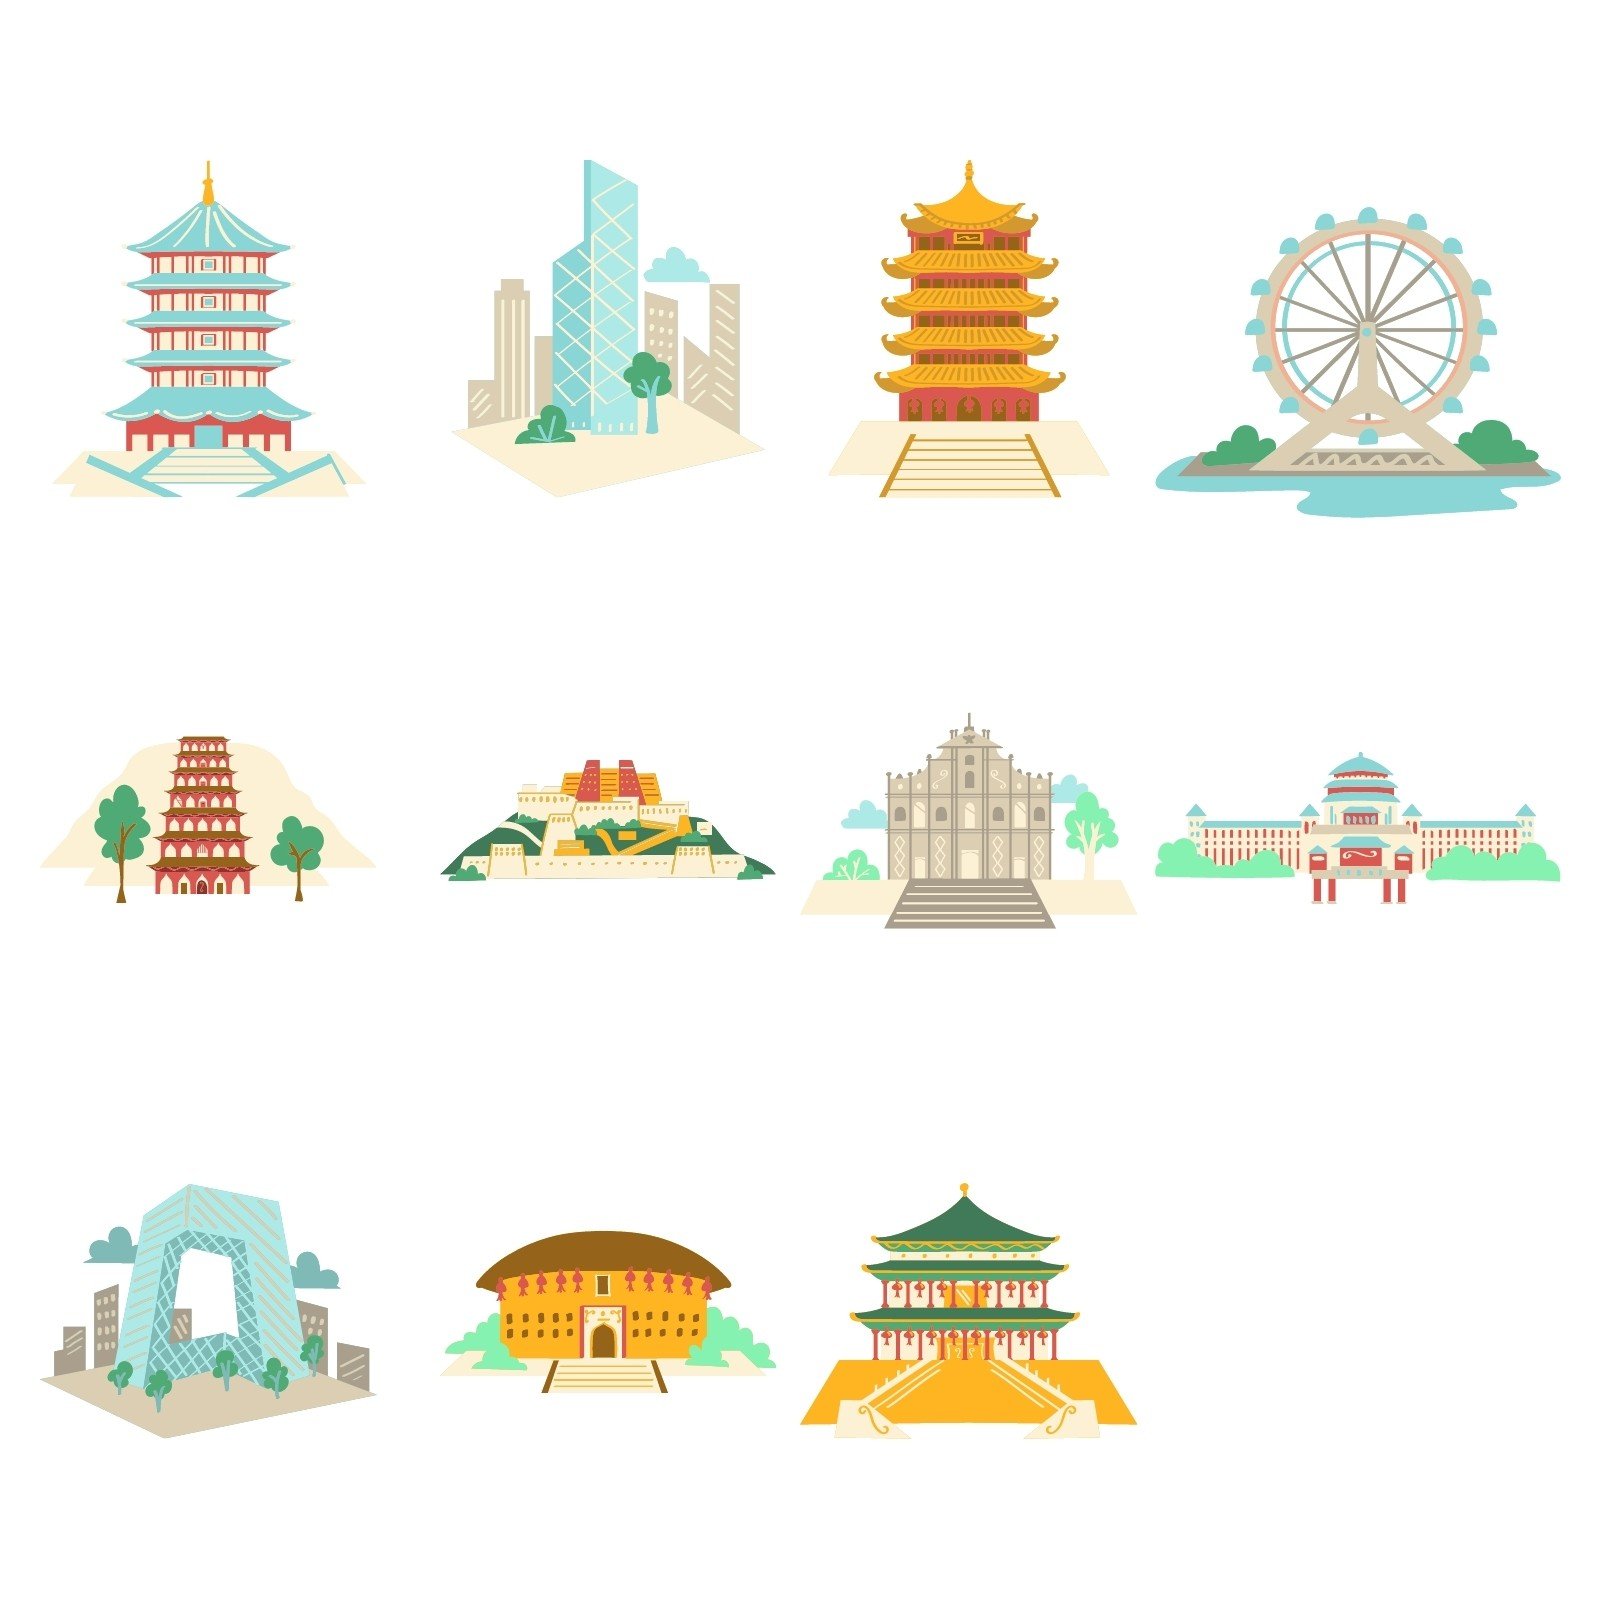 中国地标建筑手绘插画元素